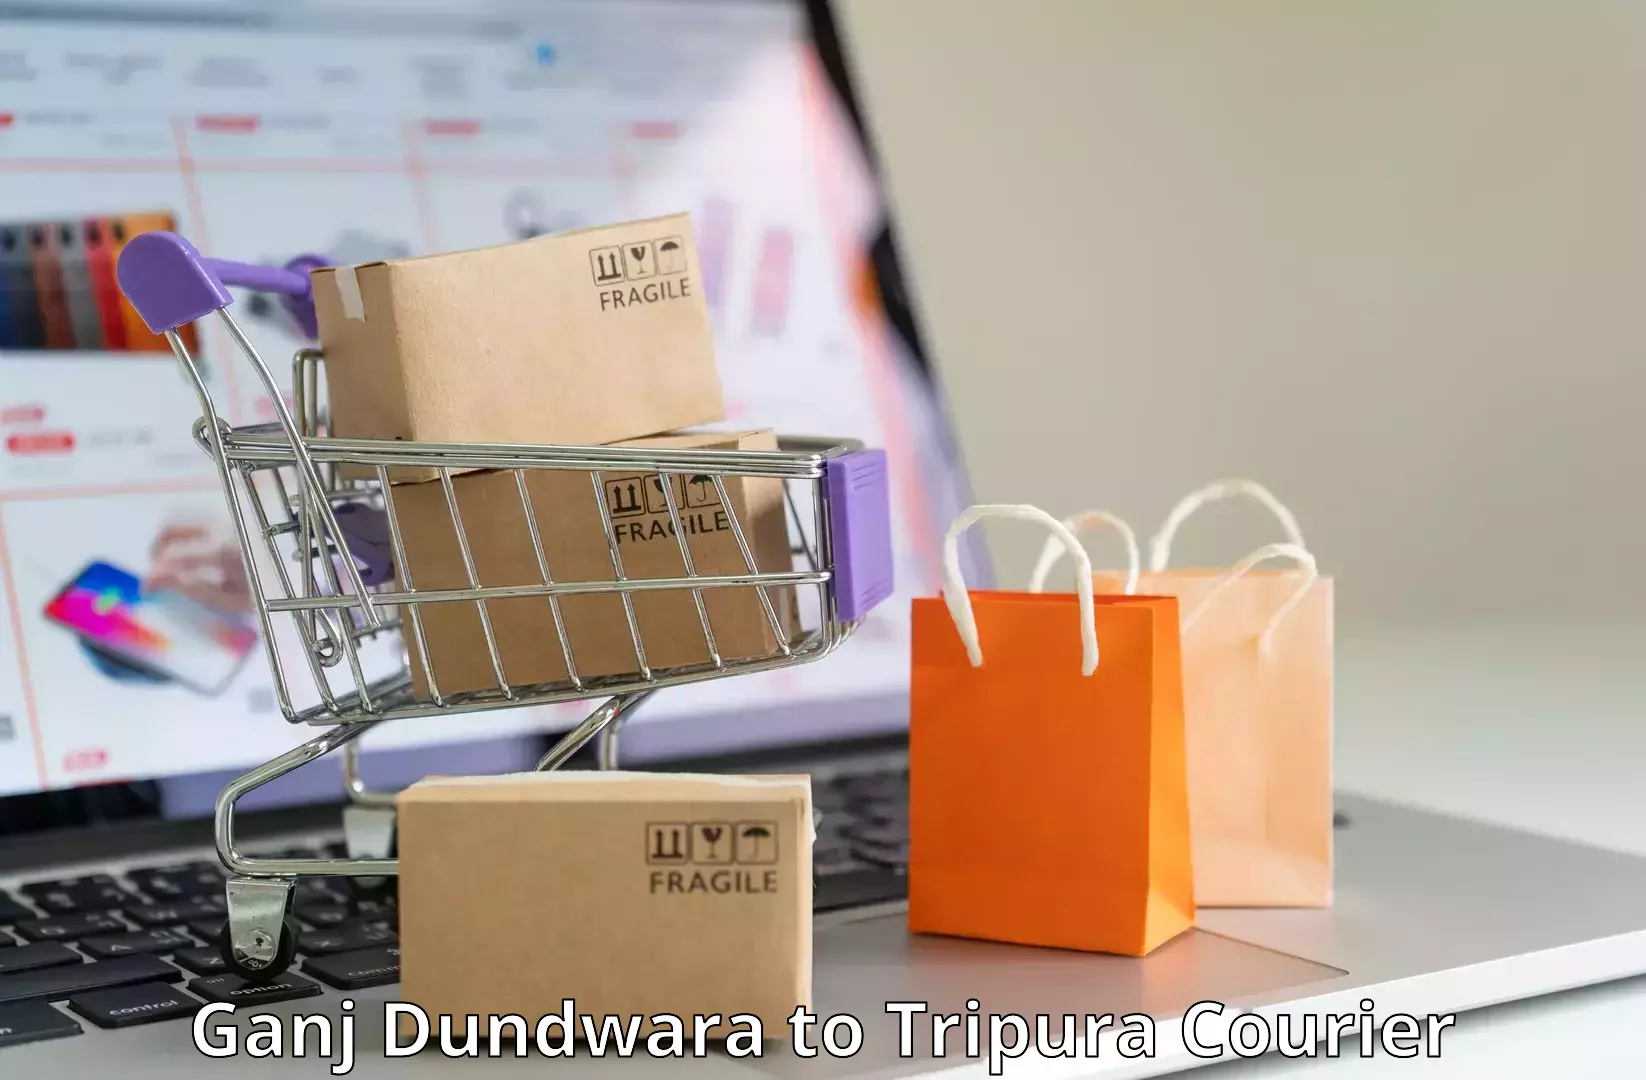 Professional courier handling in Ganj Dundwara to Udaipur Tripura